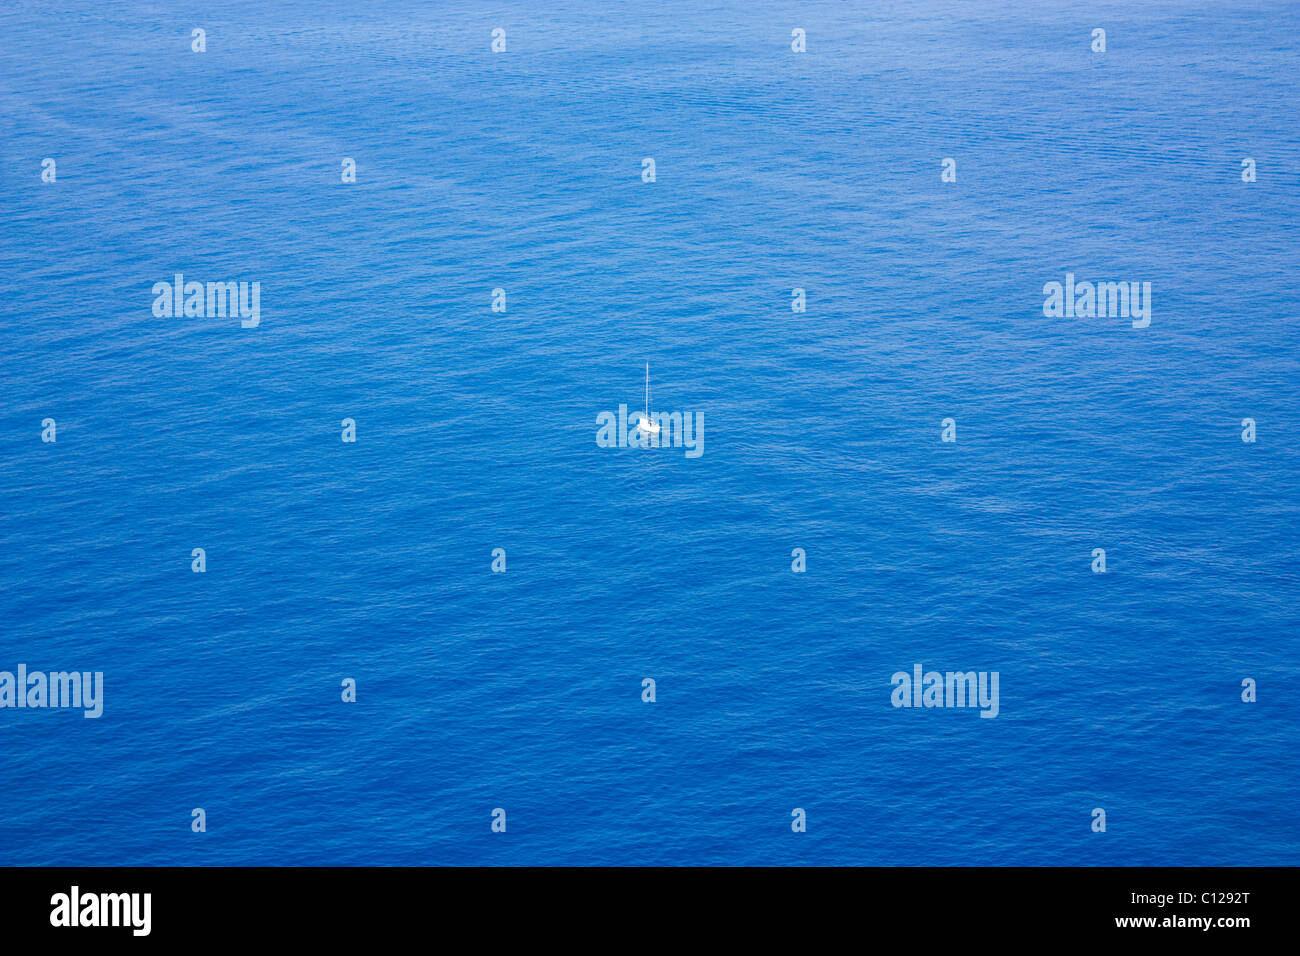 Foto von einzelnen Boot Segeln in einem weiten Ozean Stockfoto